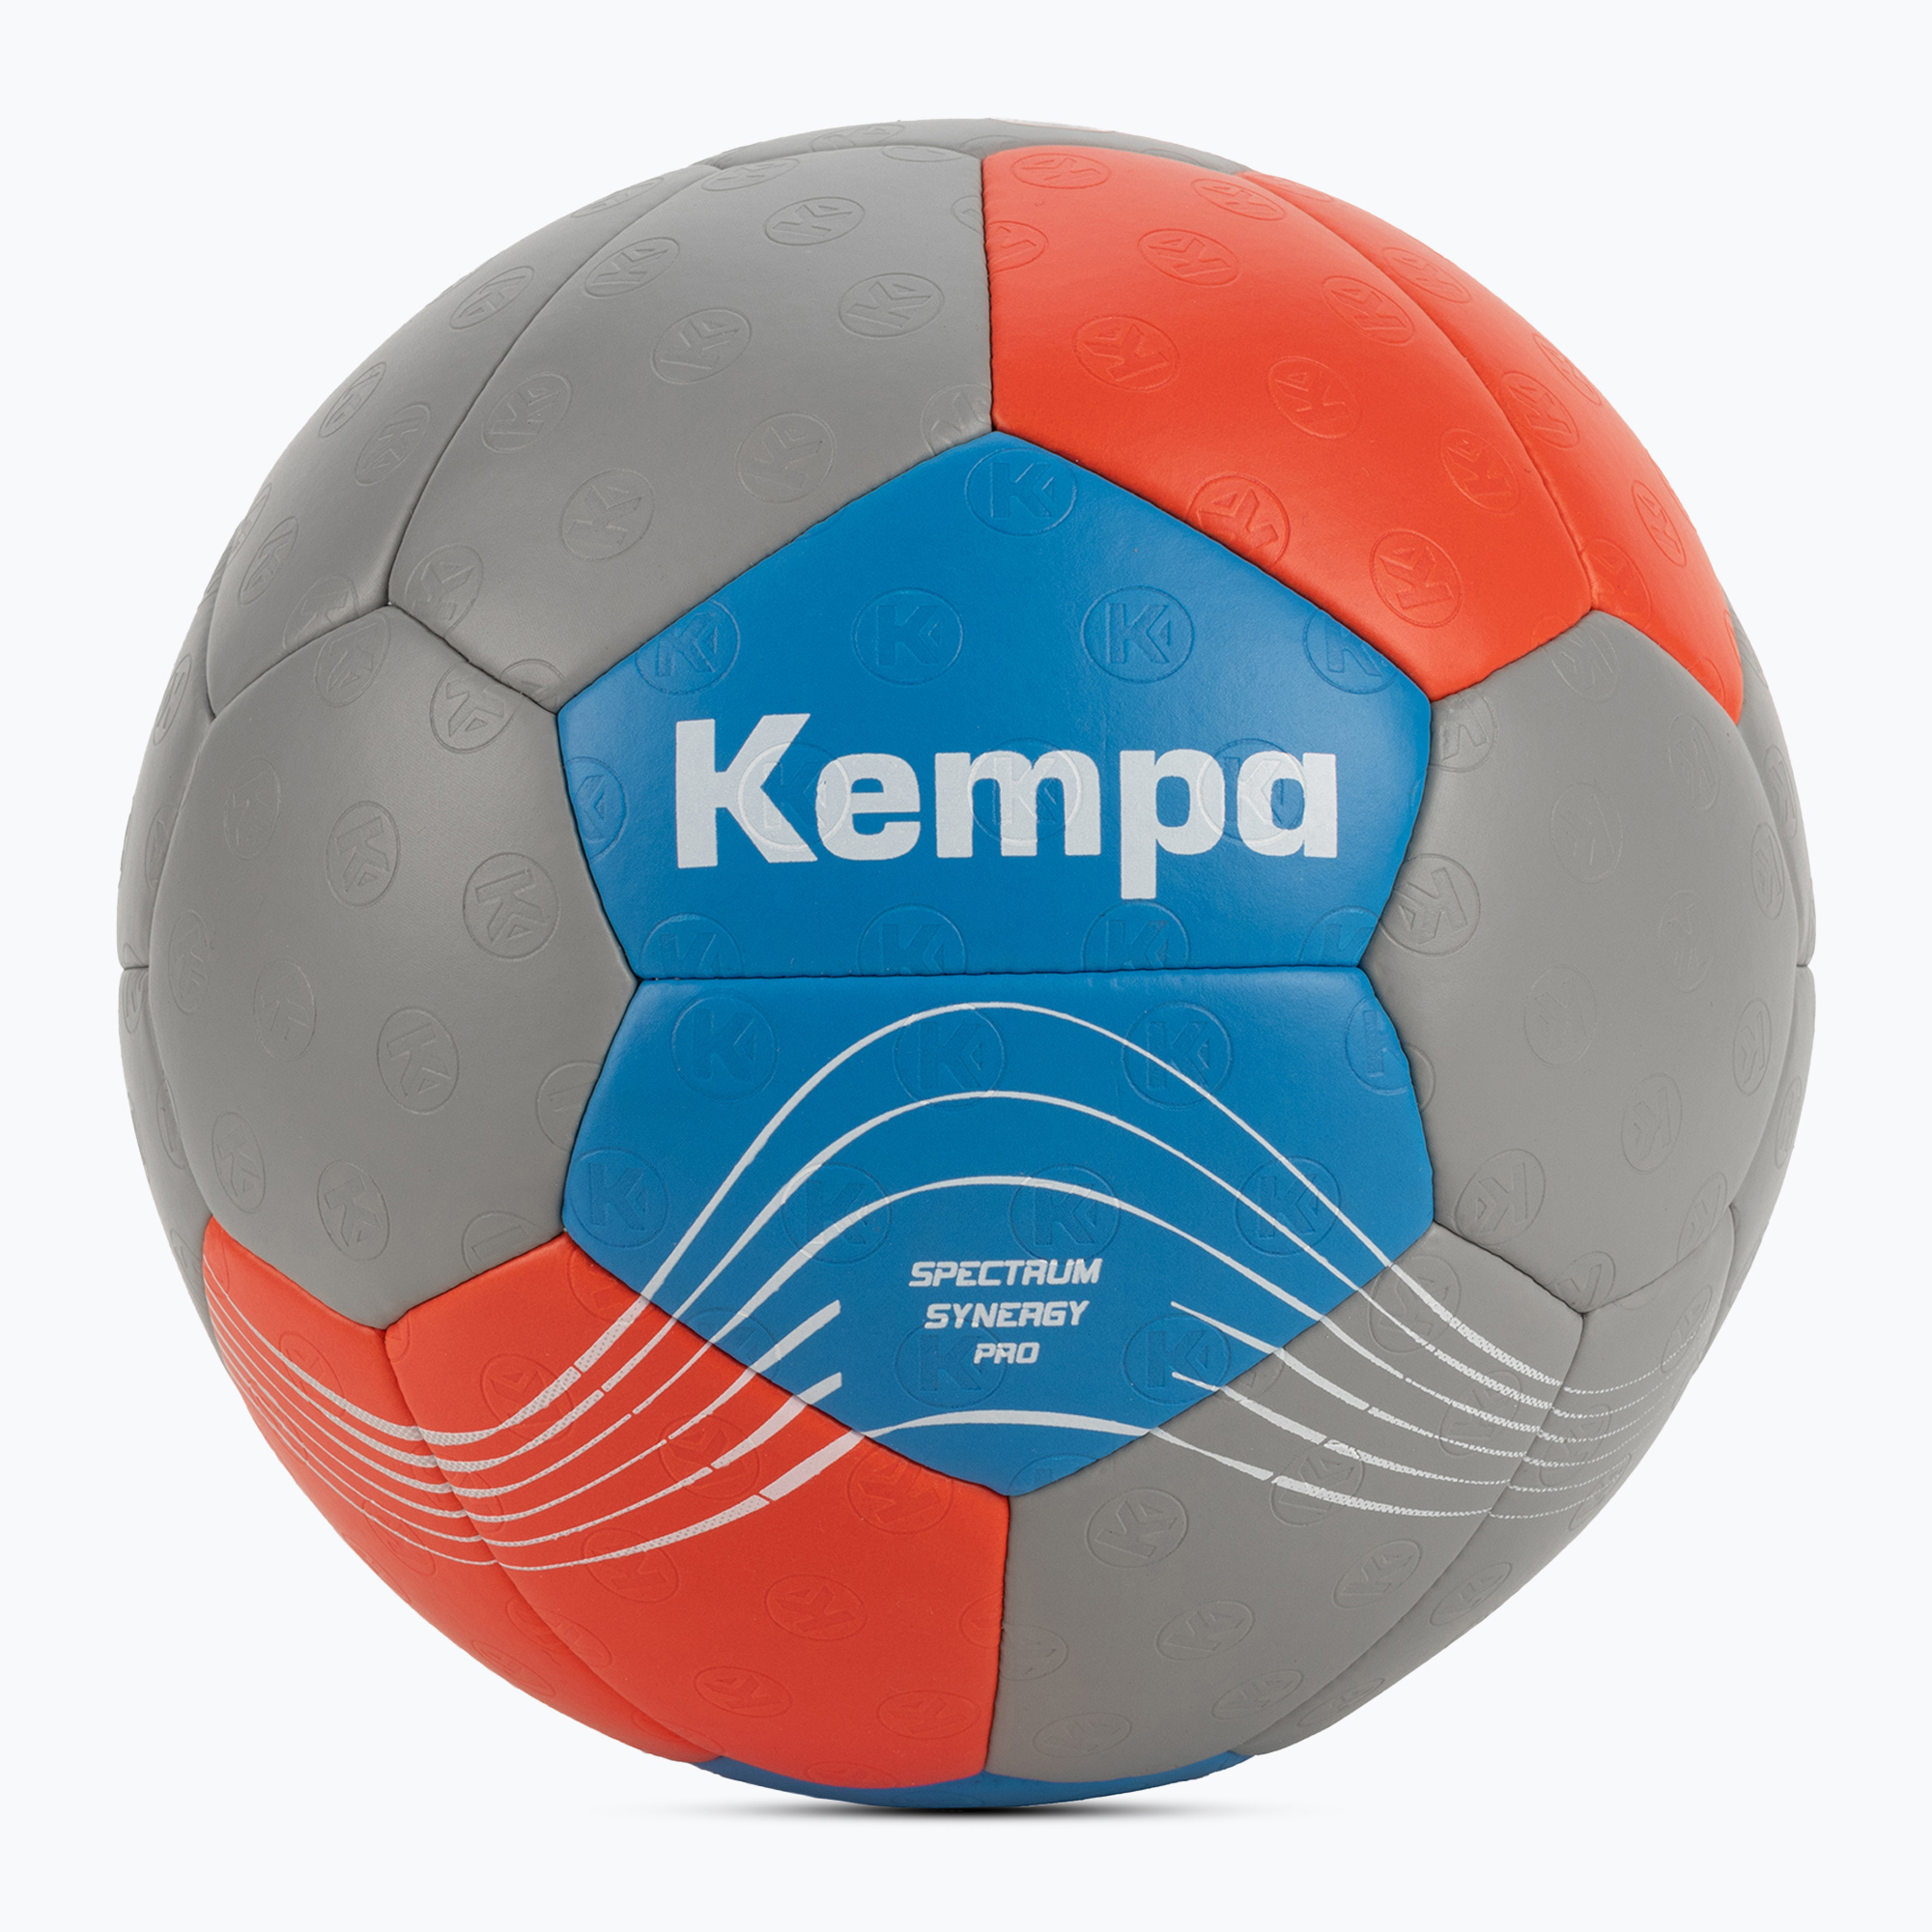 Kempa Spectrum Synergy Pro handball 200190201/3 veľkosť 3